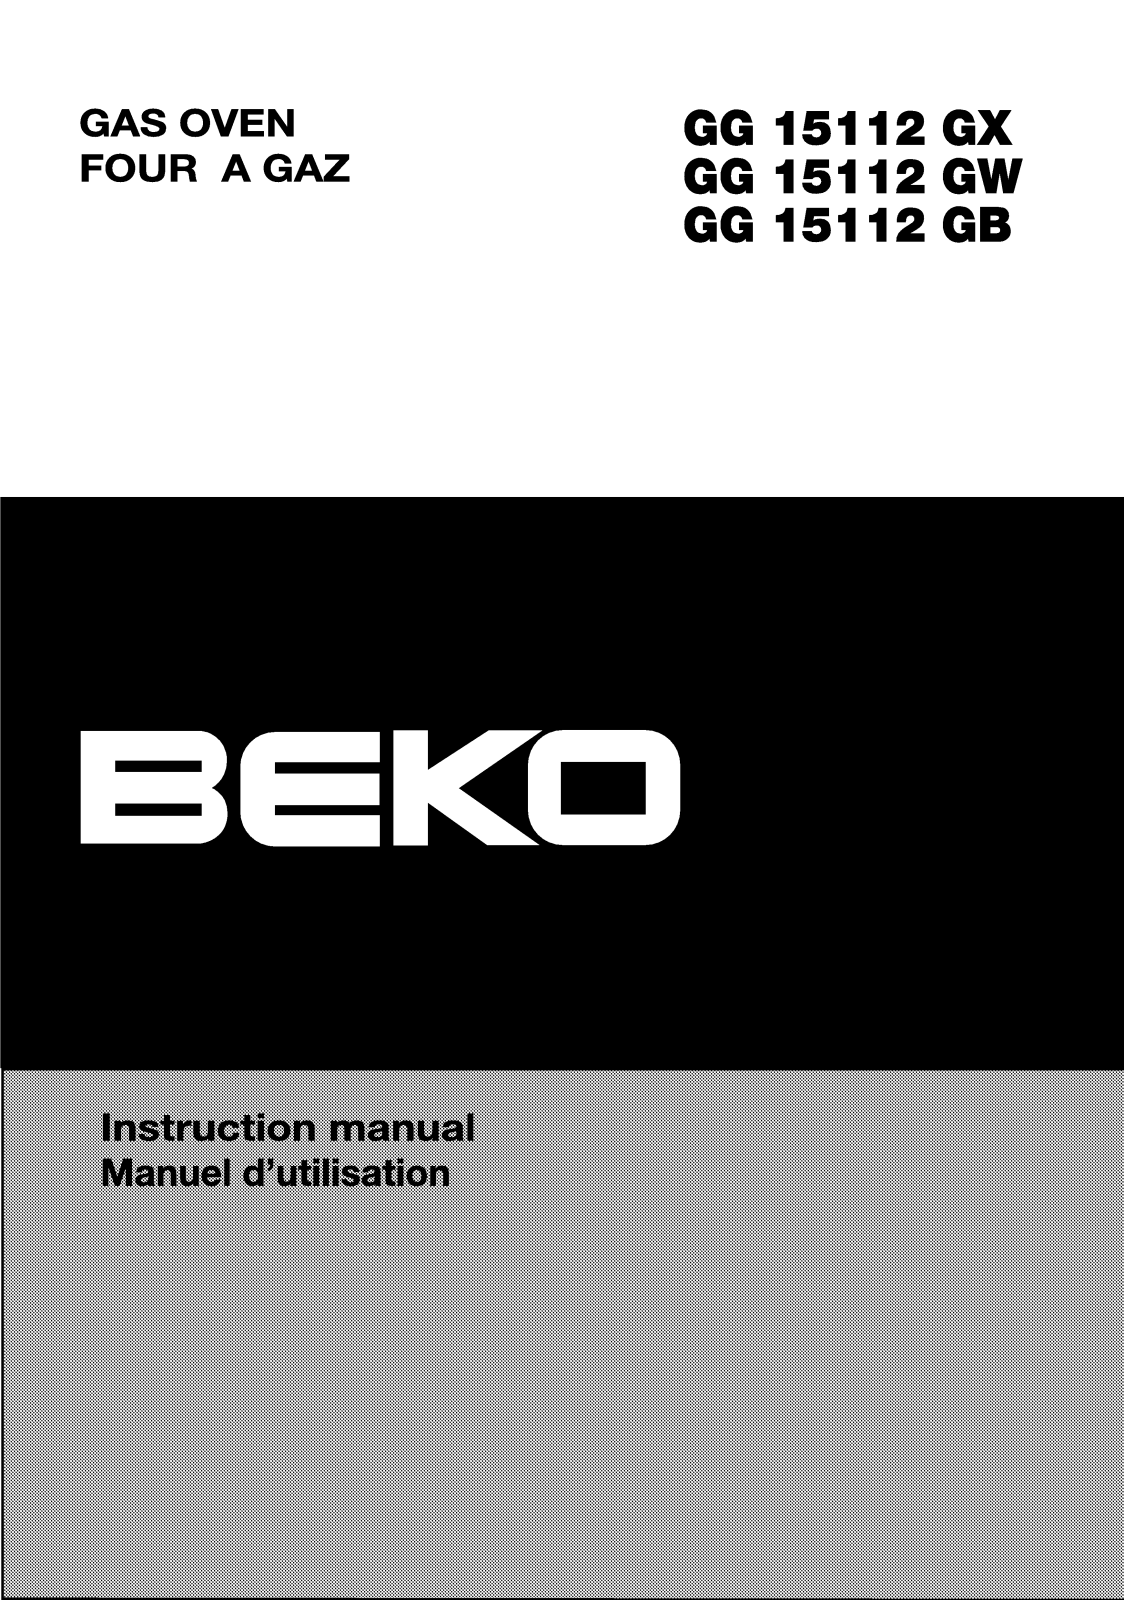 Beko GG 15112GB, GG 15112GX, GG 15112GW User Manual